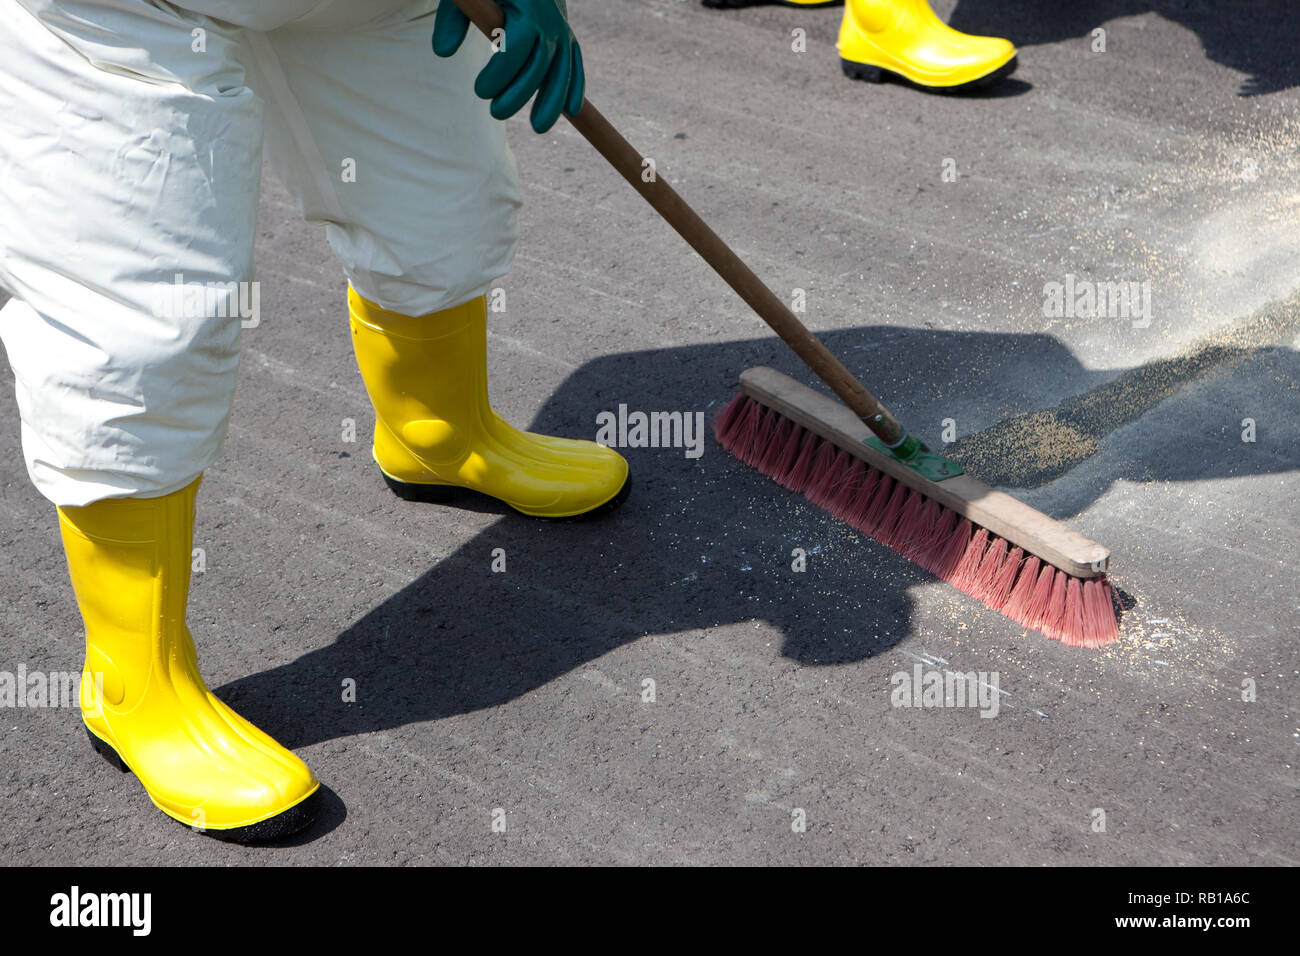 Gli uomini in abbigliamento protettivo pulizia dopo l incidente chimico. L'ingranaggio gonfiabile protegge anche contro la contaminazione con particelle radioattive contro Foto Stock